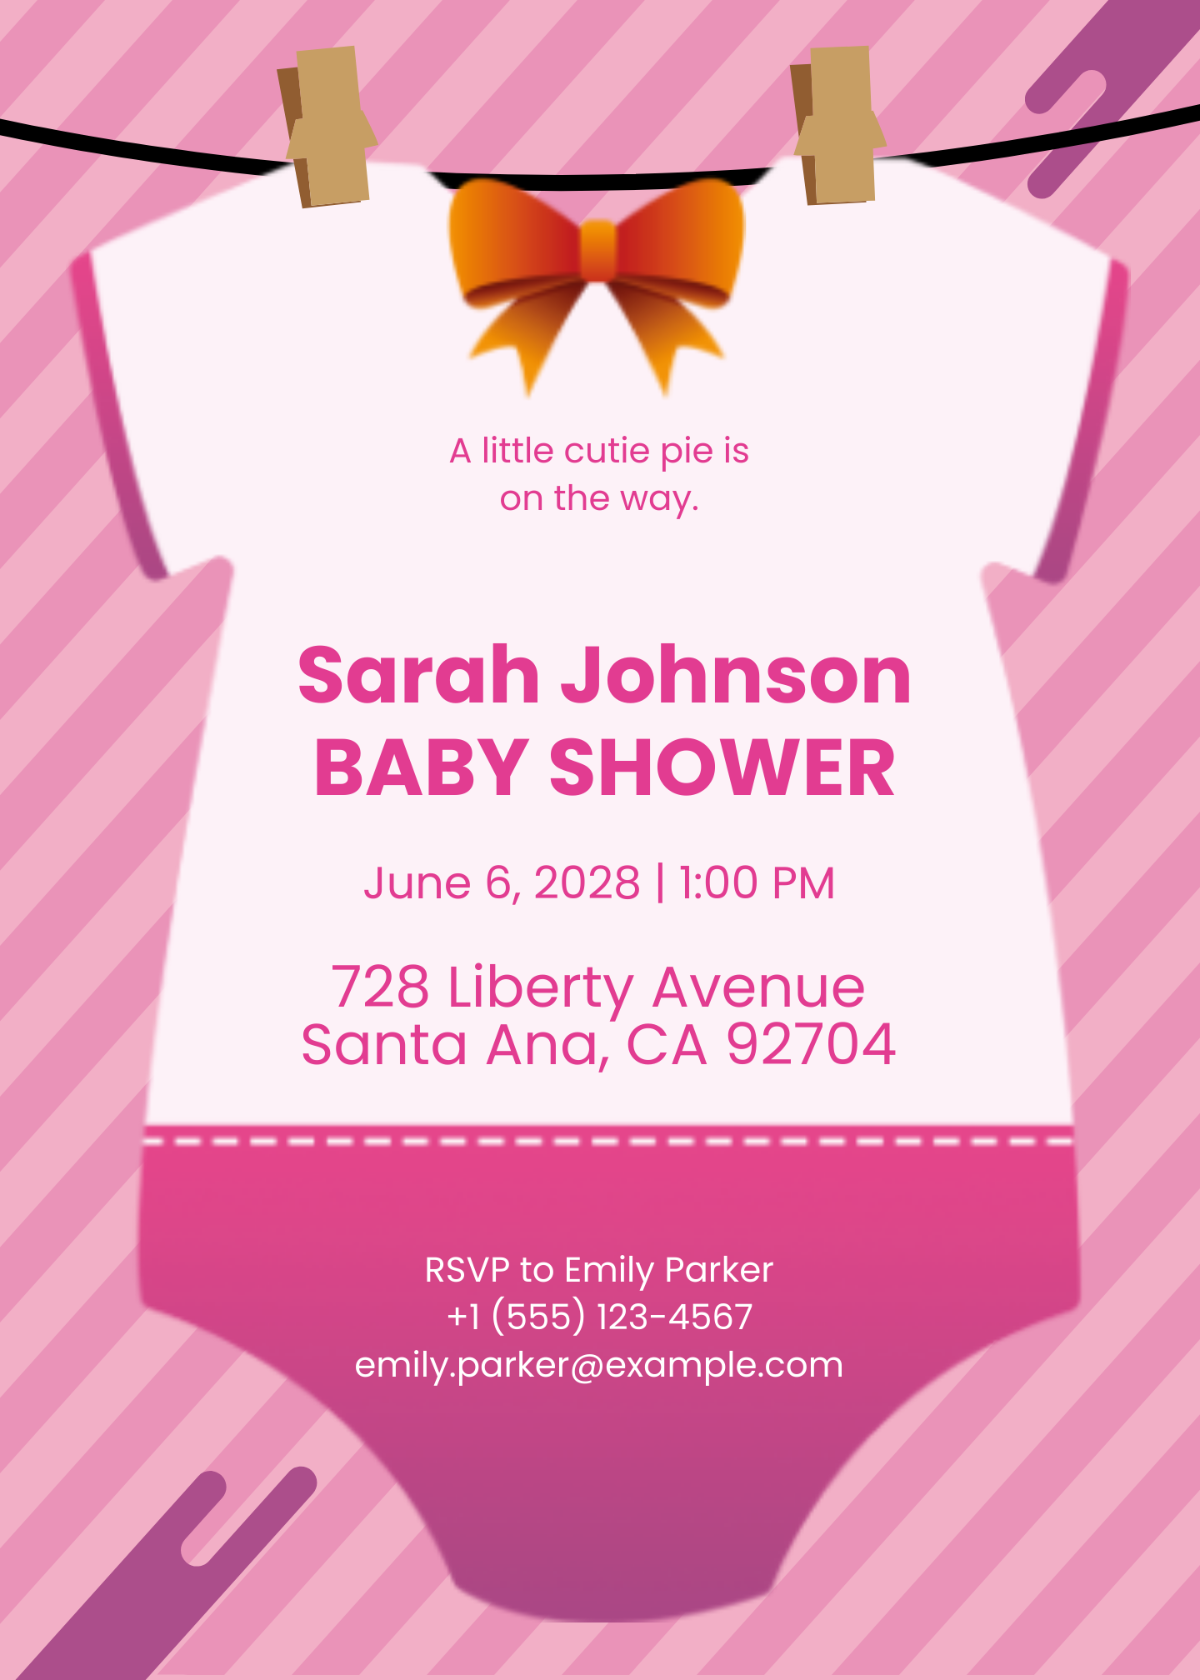 Onesie Baby Shower Invitation